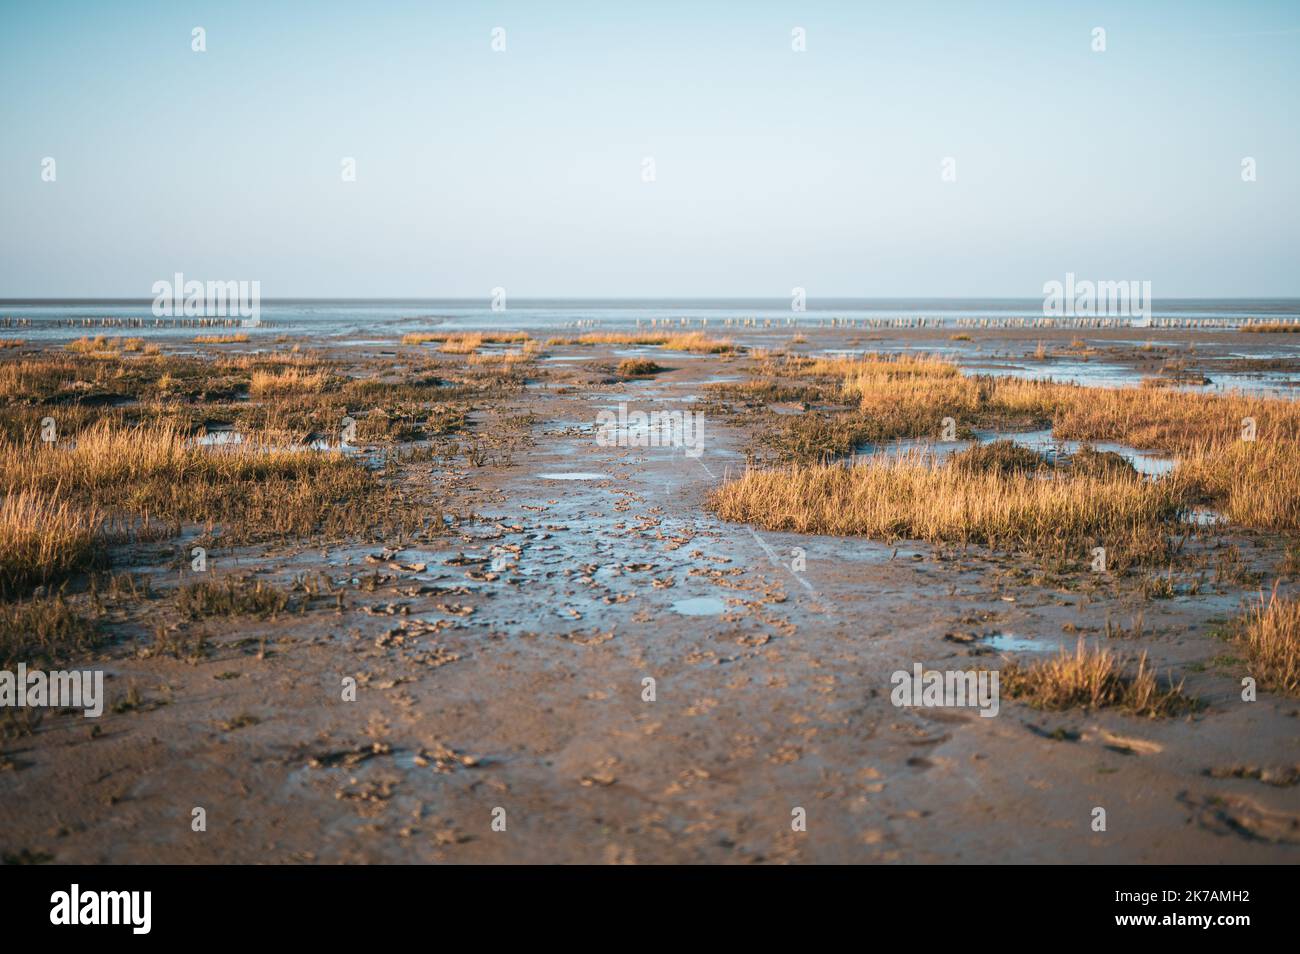 Mudflats à marée basse à Friedrichskoog, Allemagne. Photo de haute qualité Banque D'Images